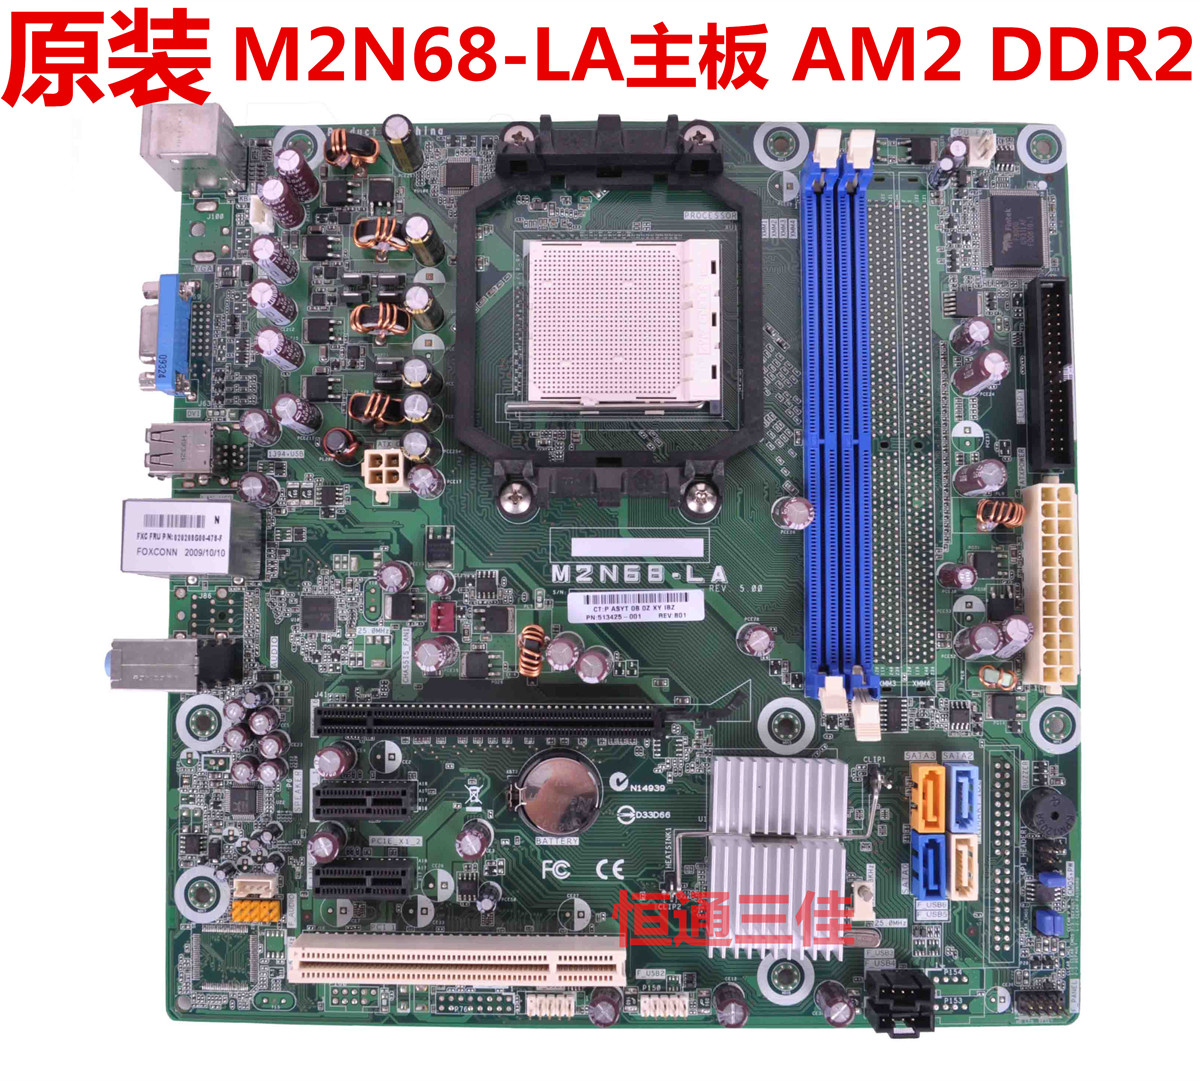 全新 HP/惠普 M2N68-LA主板 513425-001 DDR2 AM2 940 全集成主板 电脑硬件/显示器/电脑周边 主板 原图主图